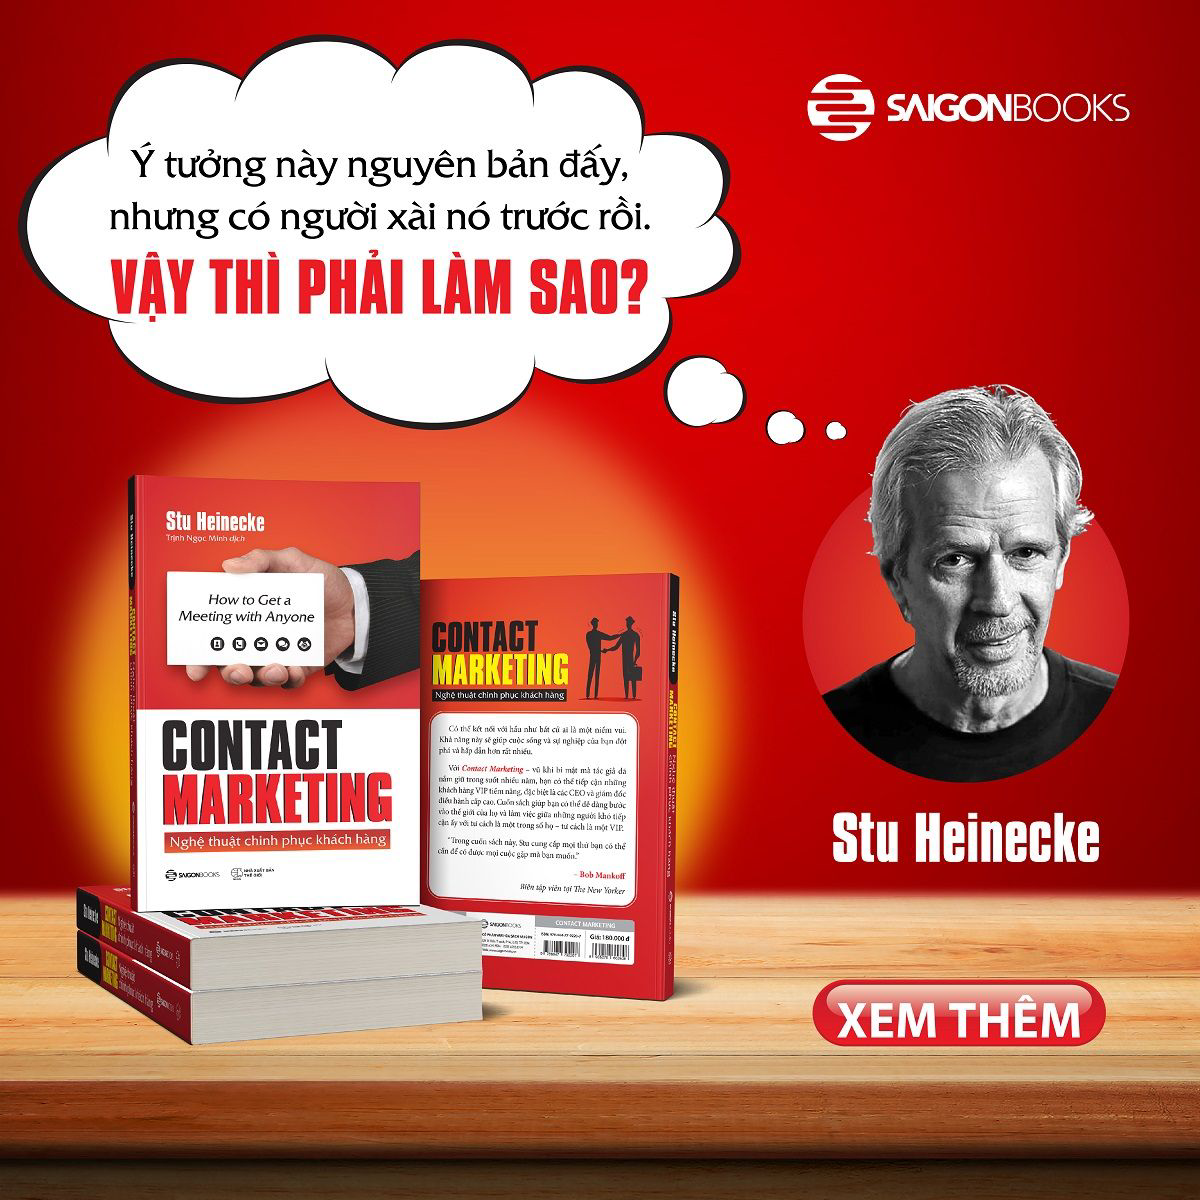 Sách Contact Marketing - Nghệ thuật chinh phục khách hàng